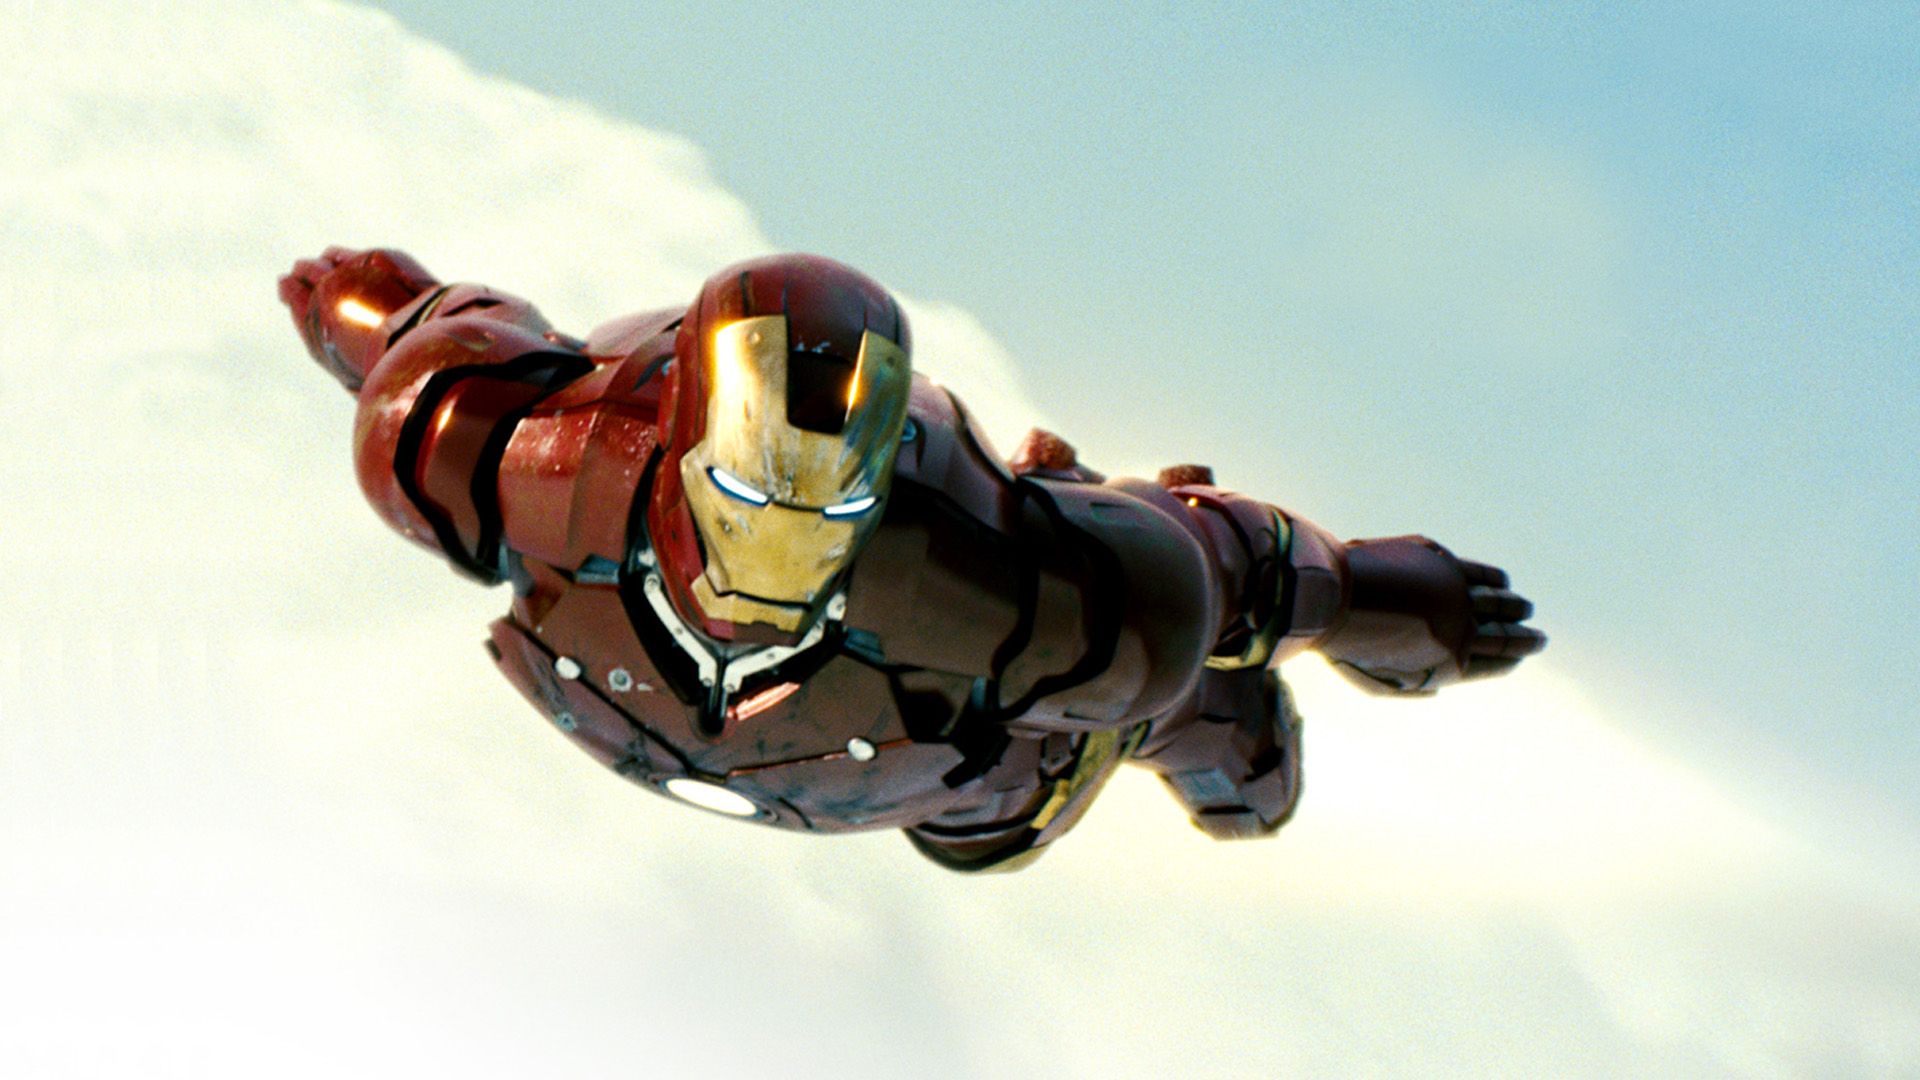 Iron Man 1 Flight , HD Wallpaper & Backgrounds